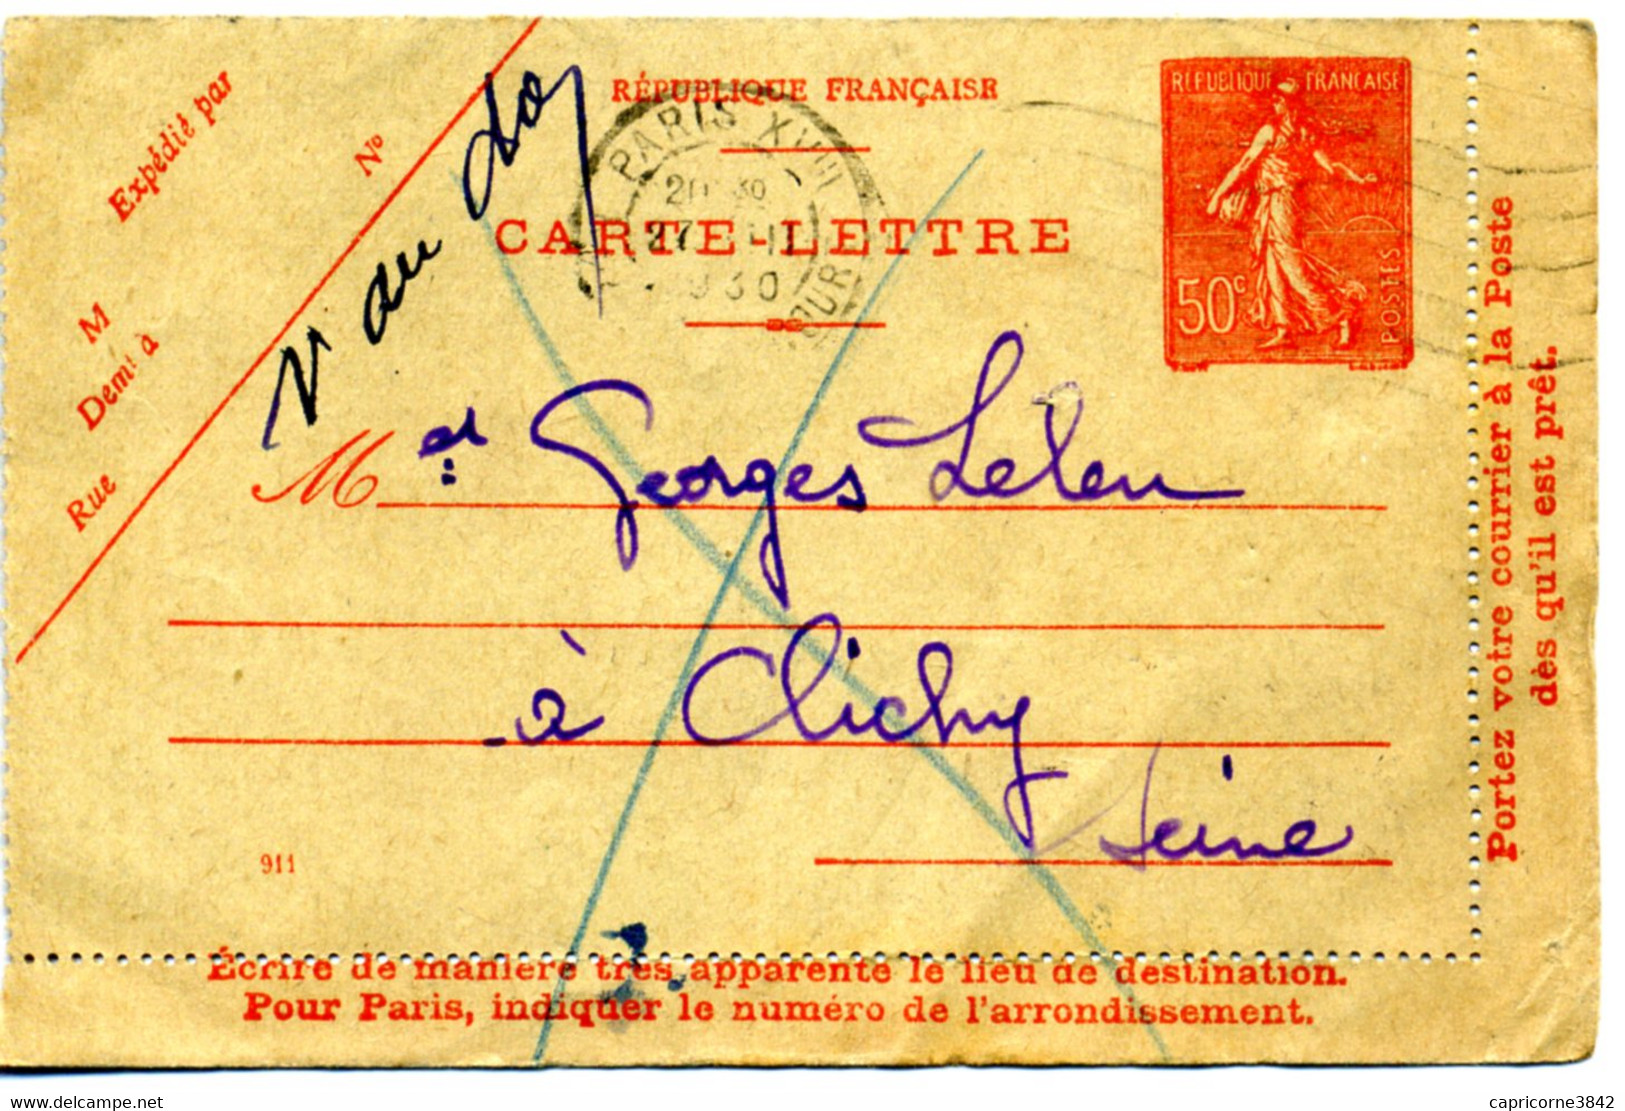 1930 - Carte-lettre De Paris XVIII - Tp 50ct N° 199 - Date 911 - Verso "INCONNU A L'APPEL DU FACTEUR" - Lettre Facteur N - Letter Cards